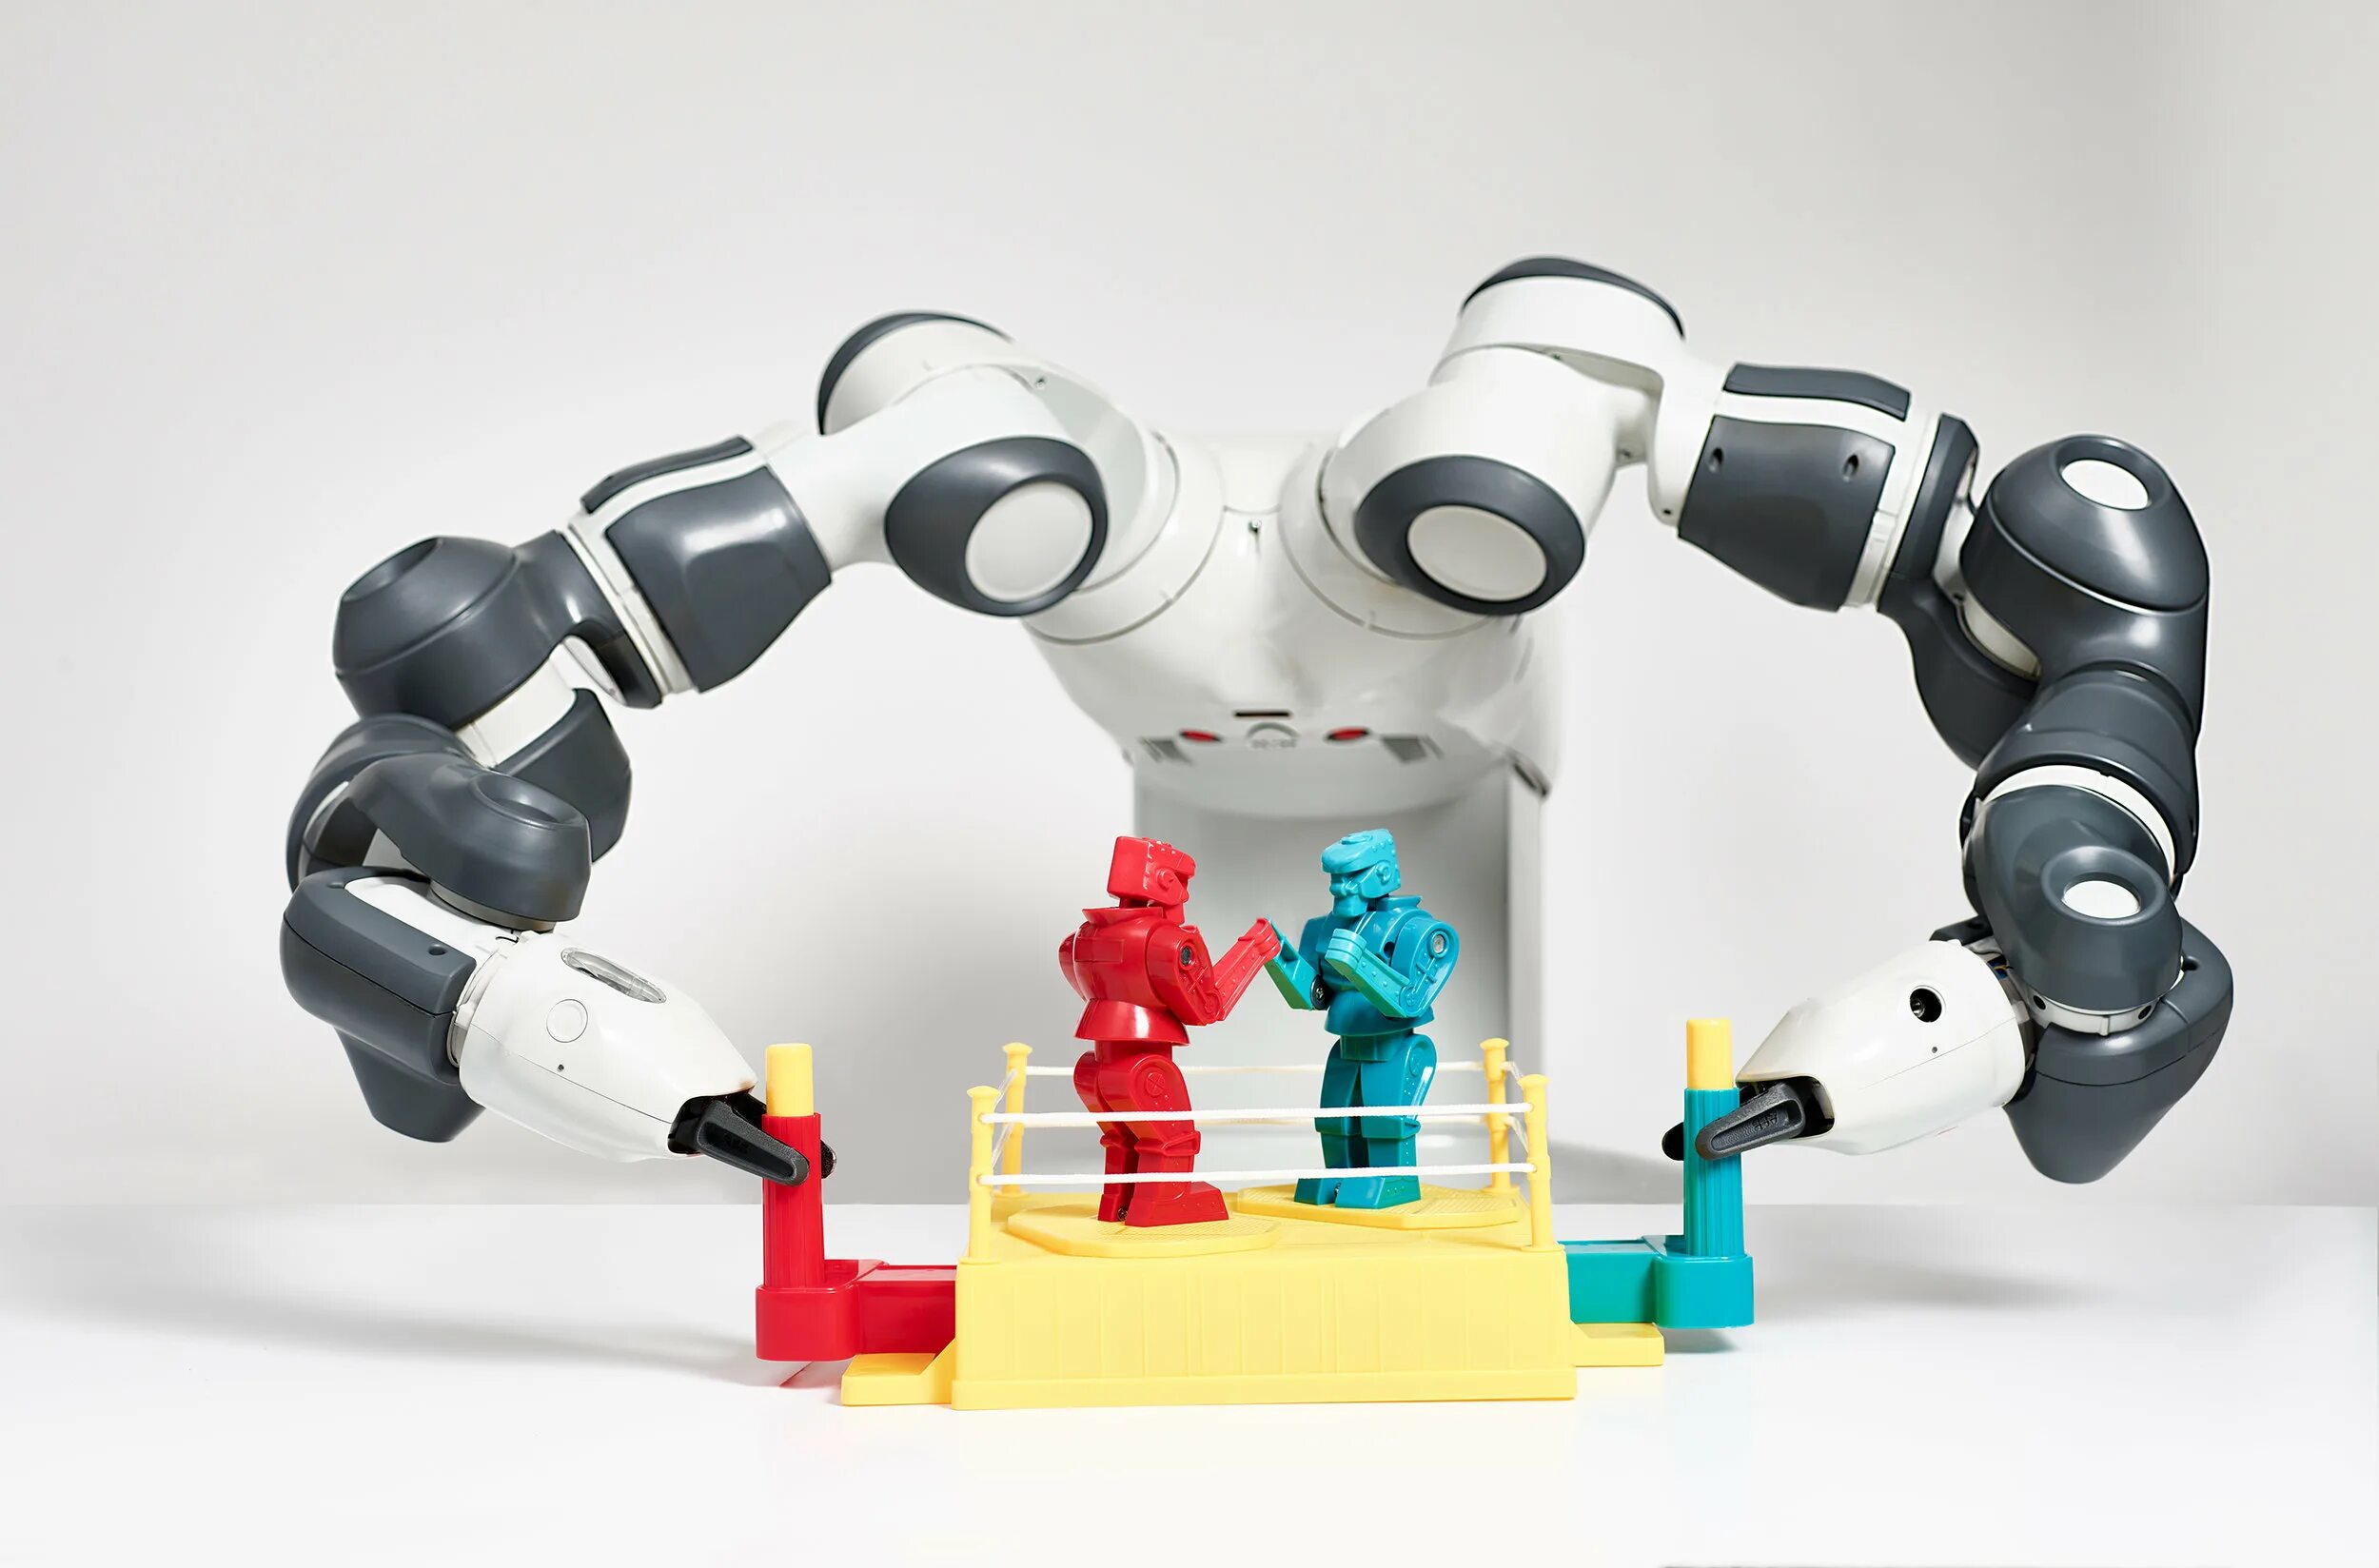 Роботы play the game. Развлекательные роботы. Роботы для развлечения. Робот боксер игрушка. Роботы в сфере развлечений.